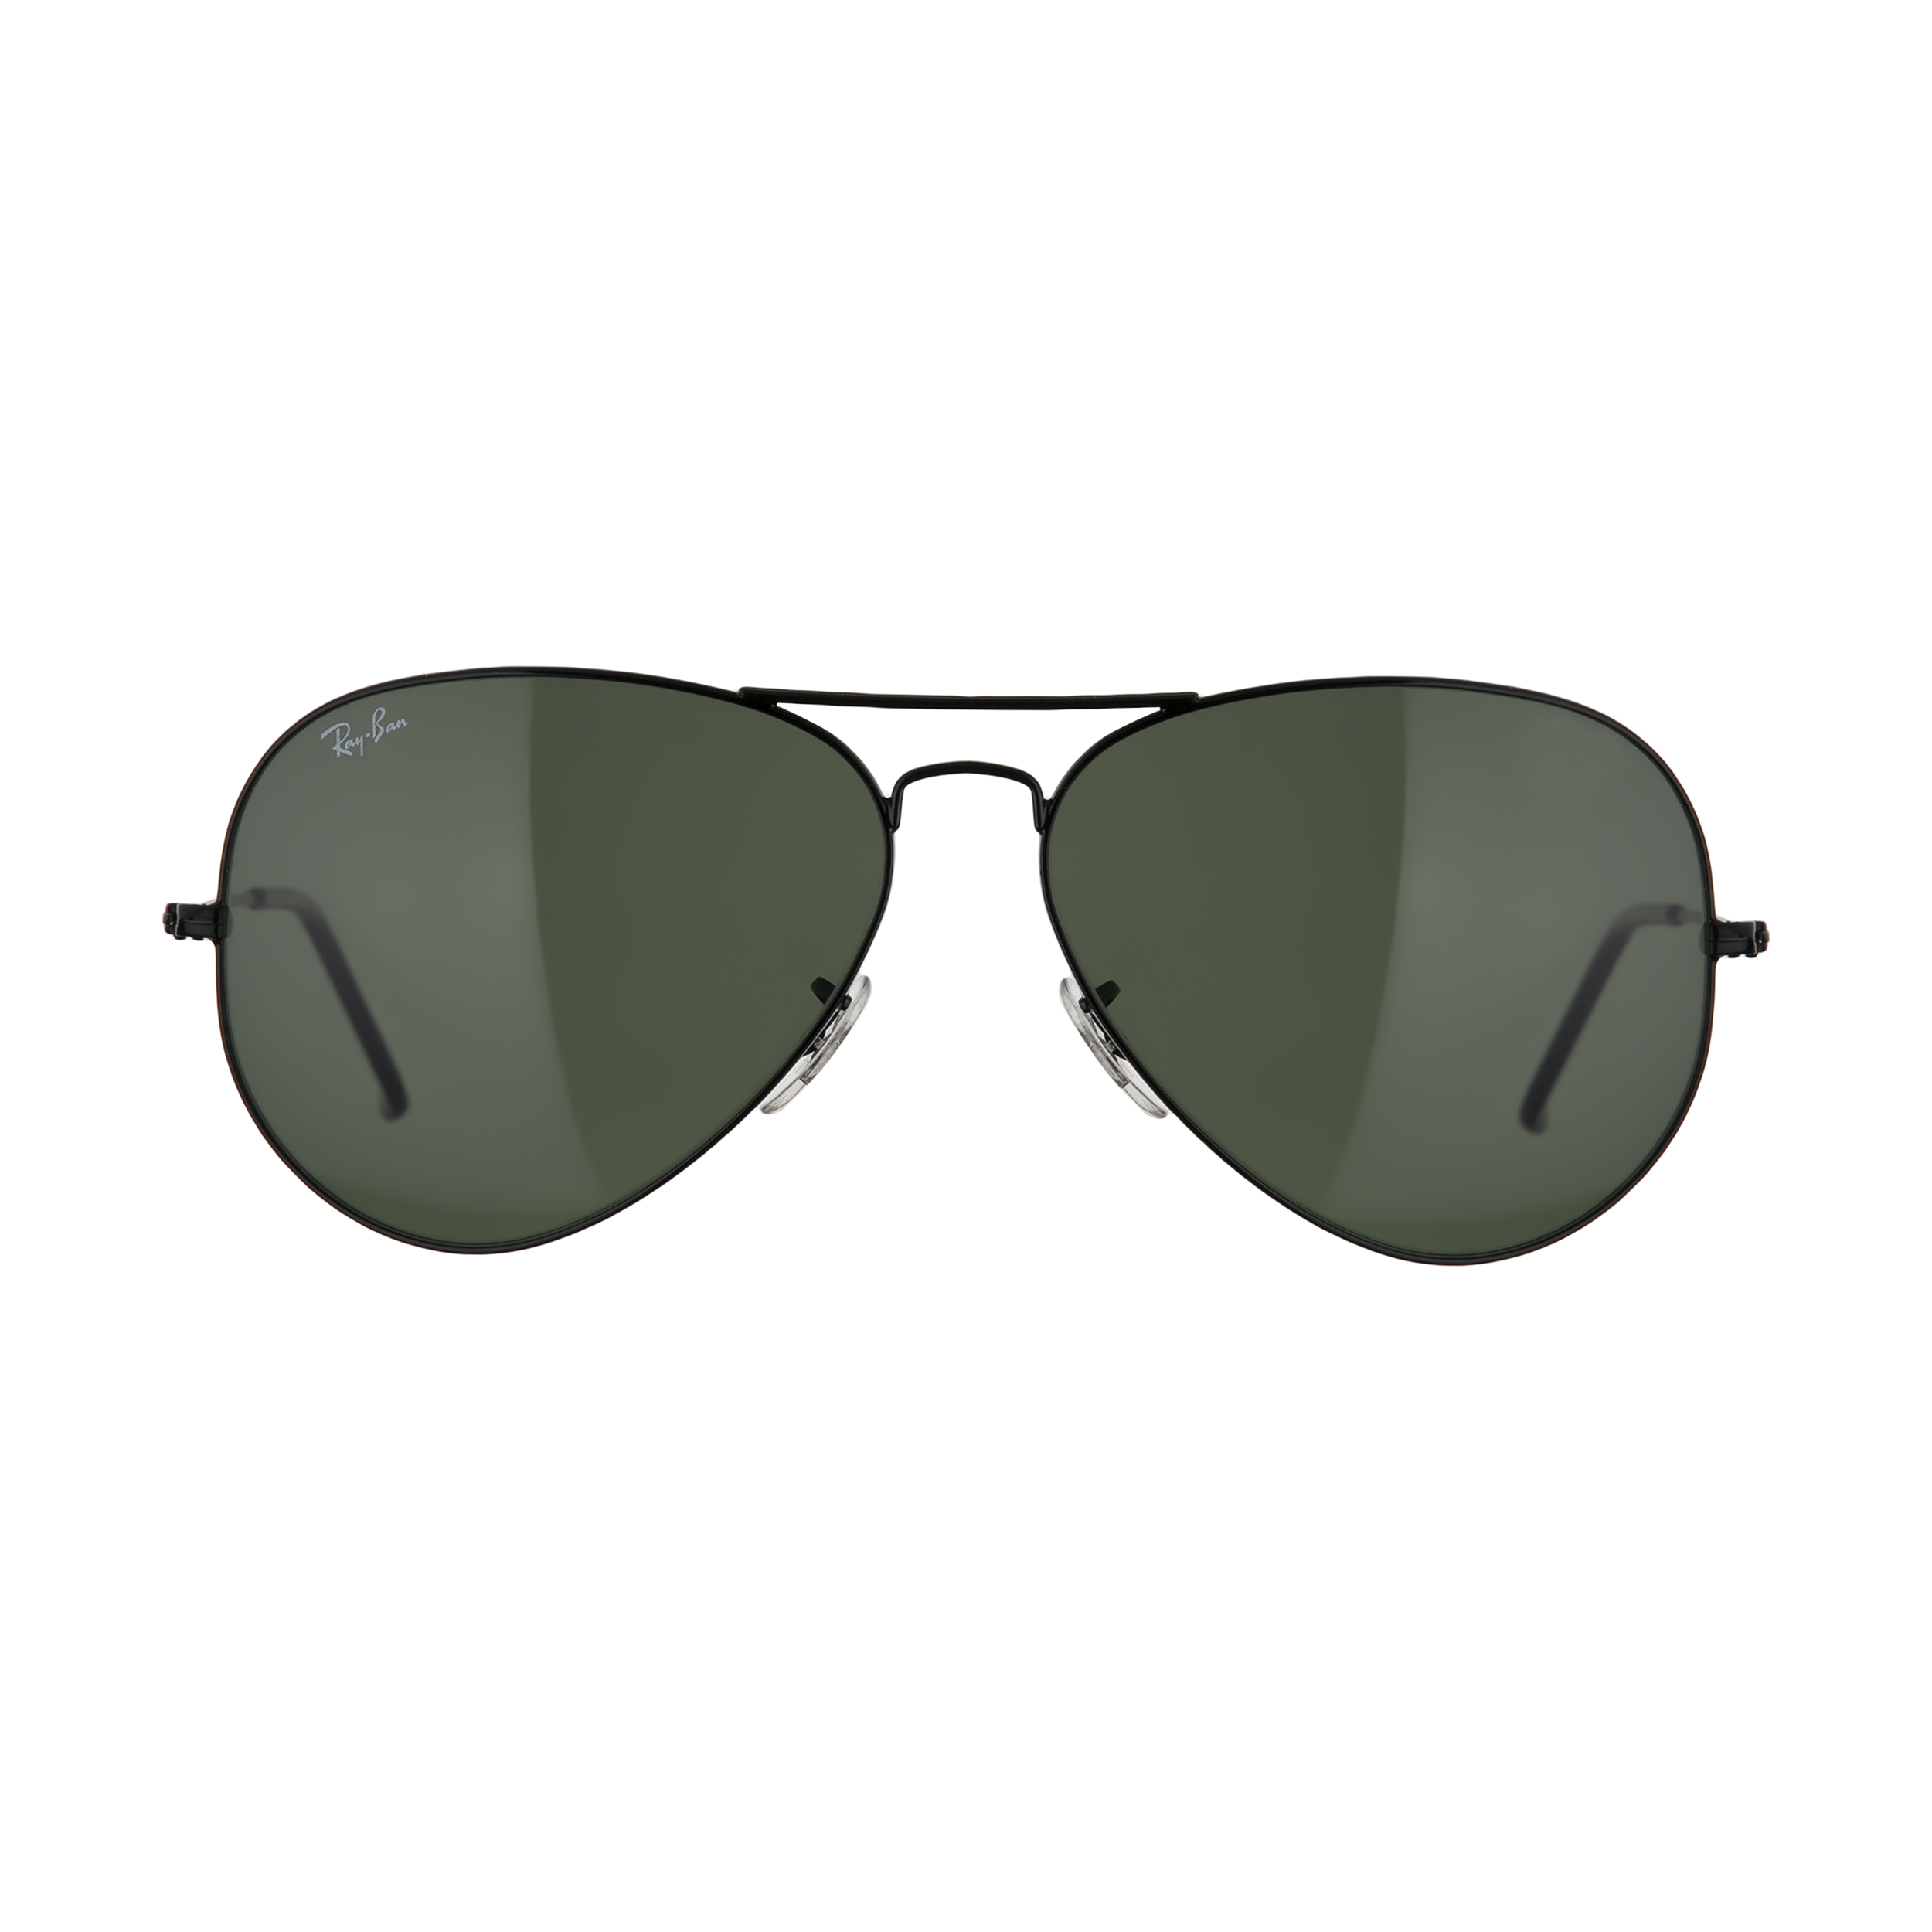 نکته خرید - قیمت روز عینک آفتابی ری بن مدل 3025-002-62 خرید